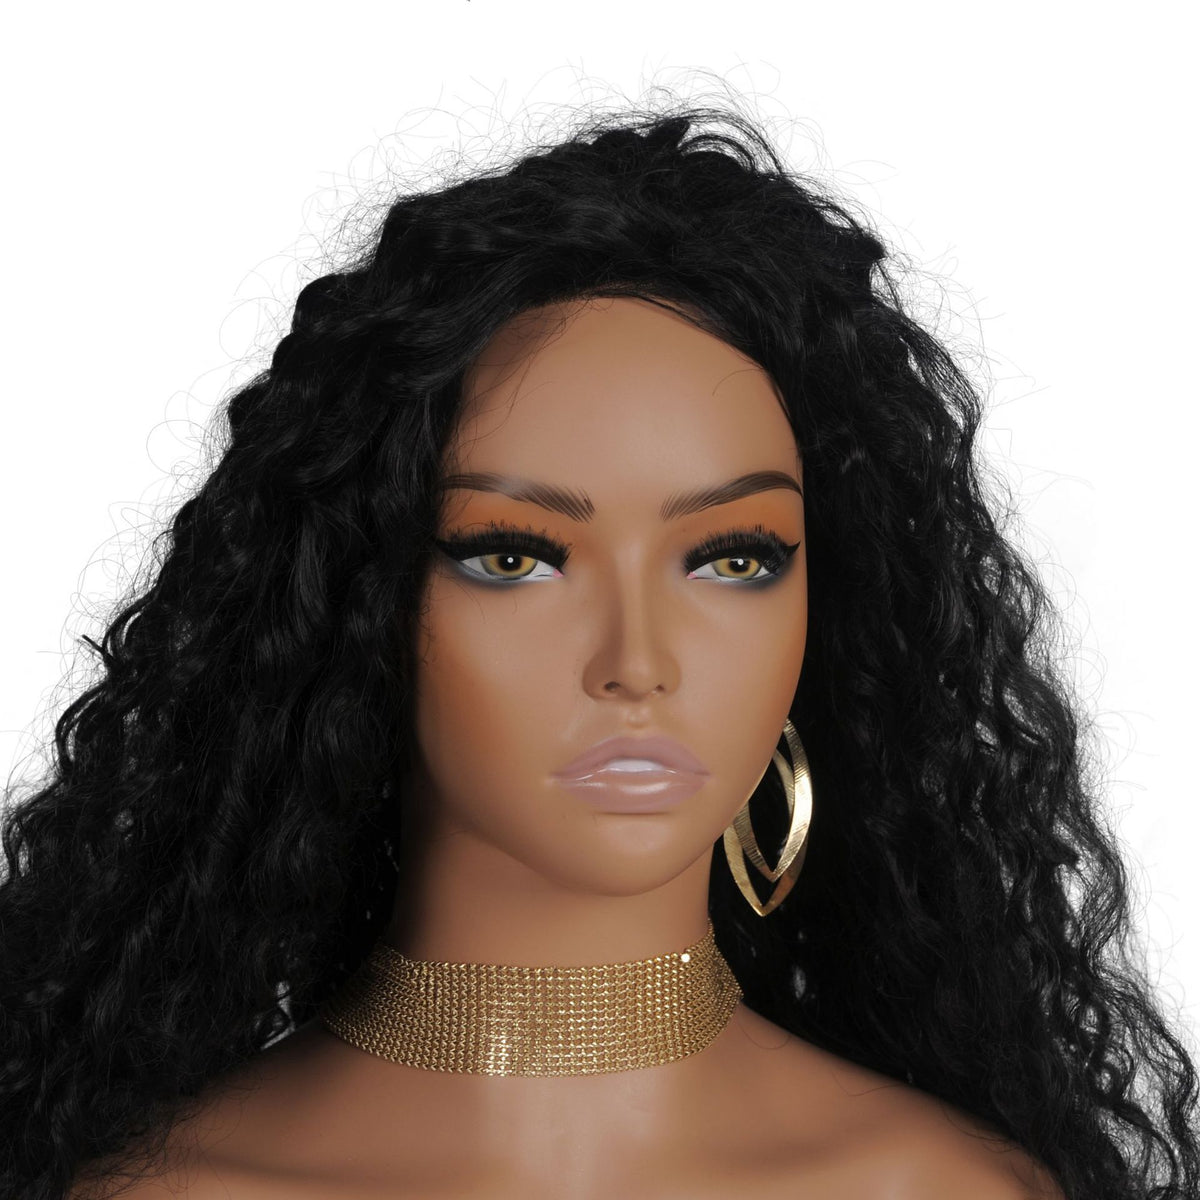 Wig, Mannequin Head, Half-Body Prop Model